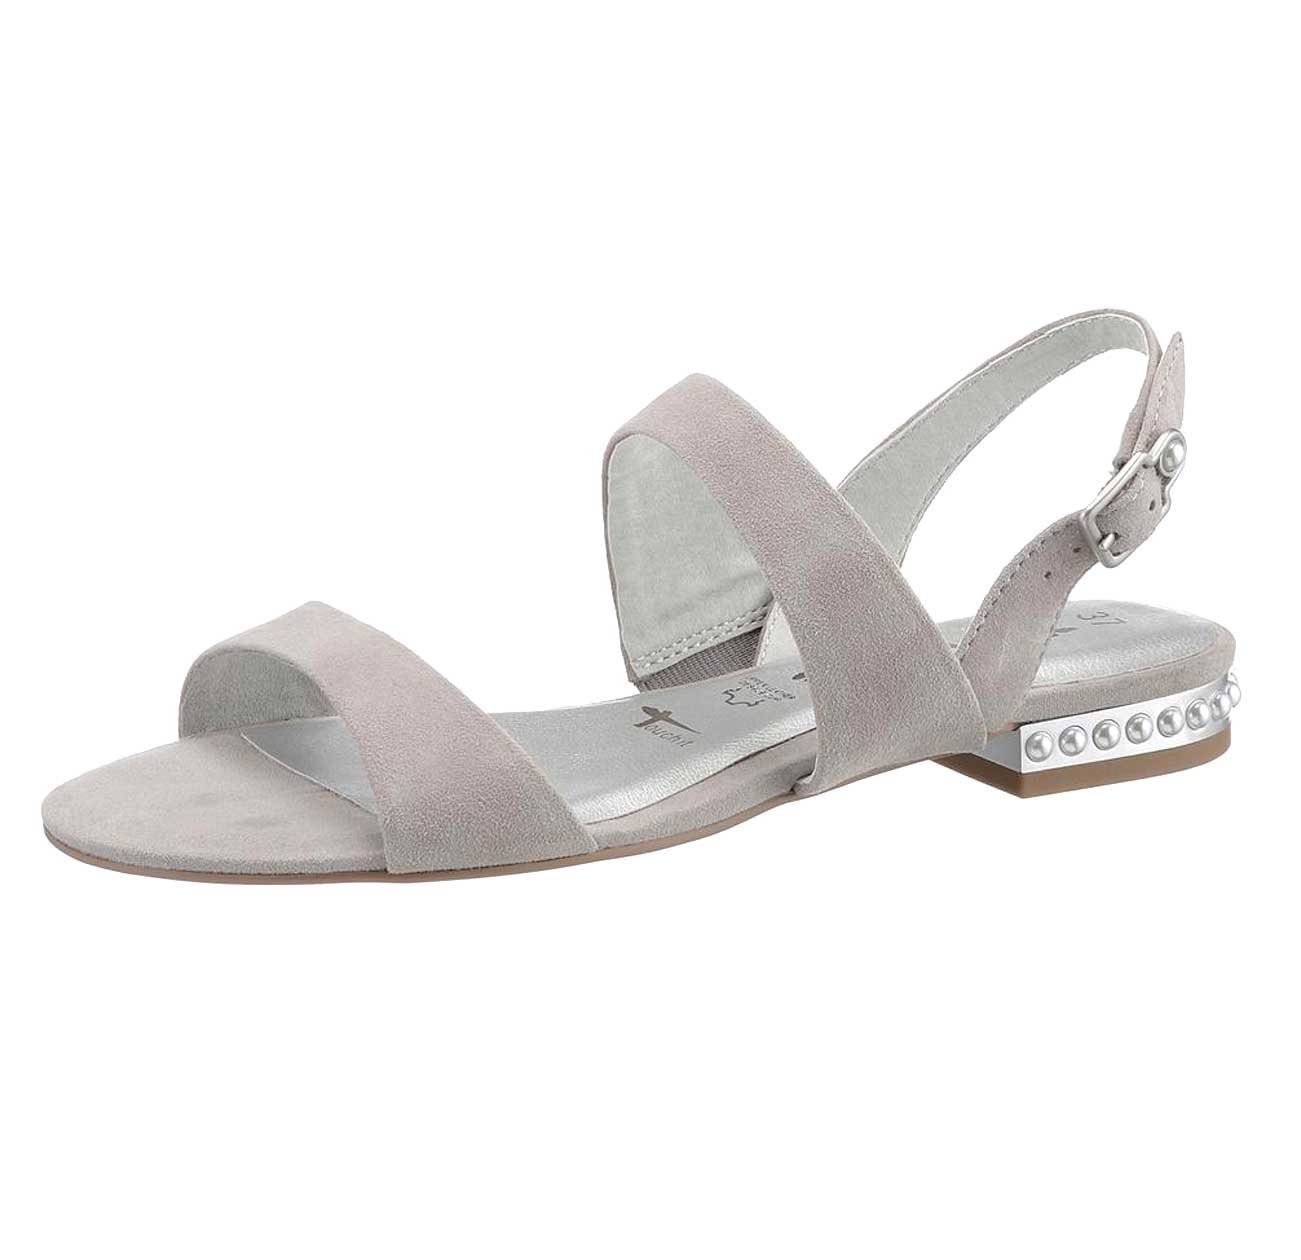 Tamaris »TAMARIS Damen Marken-Veloursleder-Sandalette mit Perlen, grau«  Sandalette online kaufen | OTTO